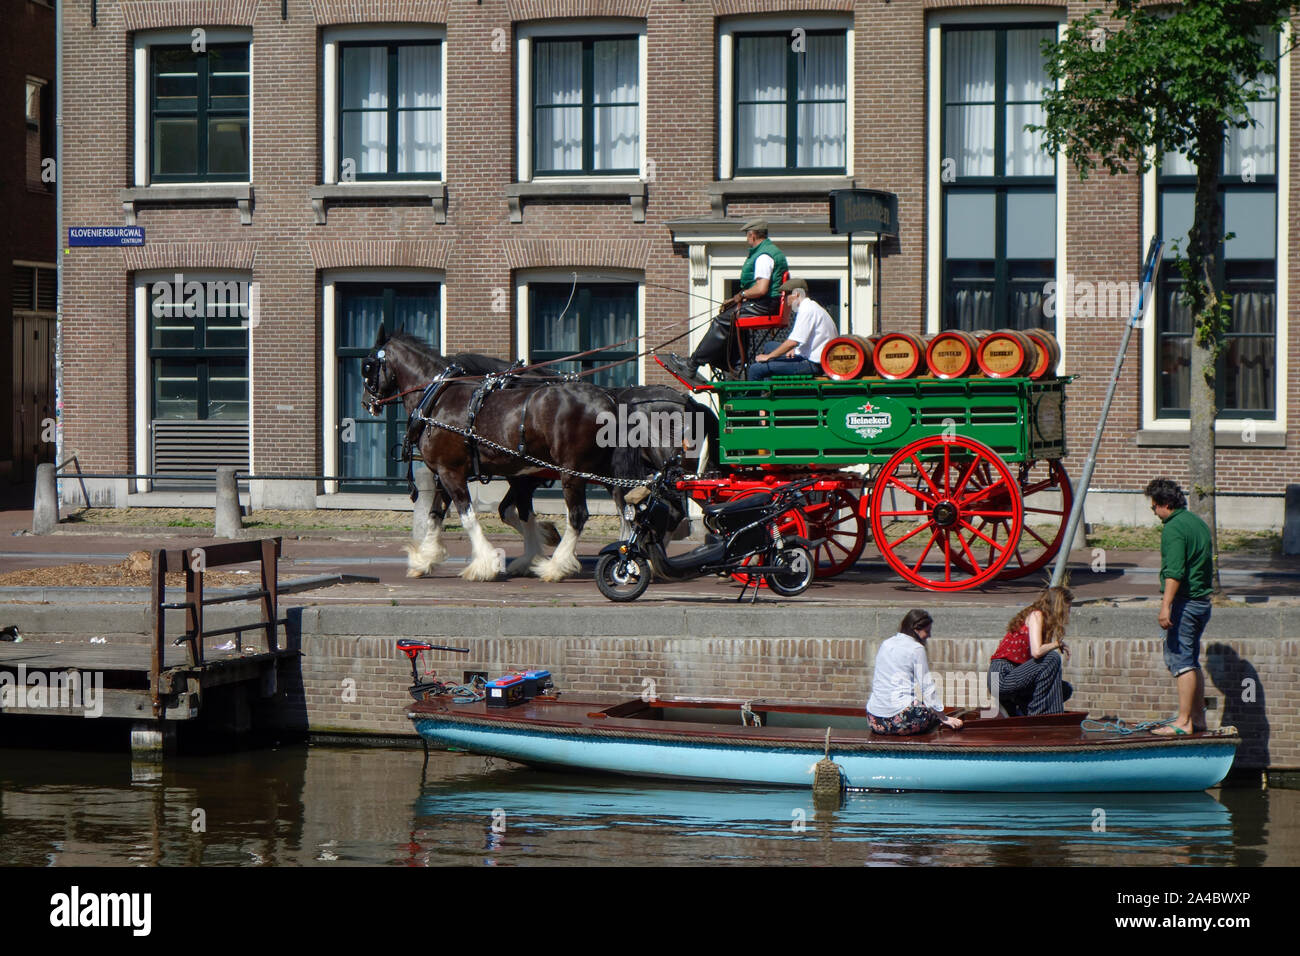 La bière Heineken wagon tiré par des livraisons à Amsterdam, aux Pays-Bas. Banque D'Images